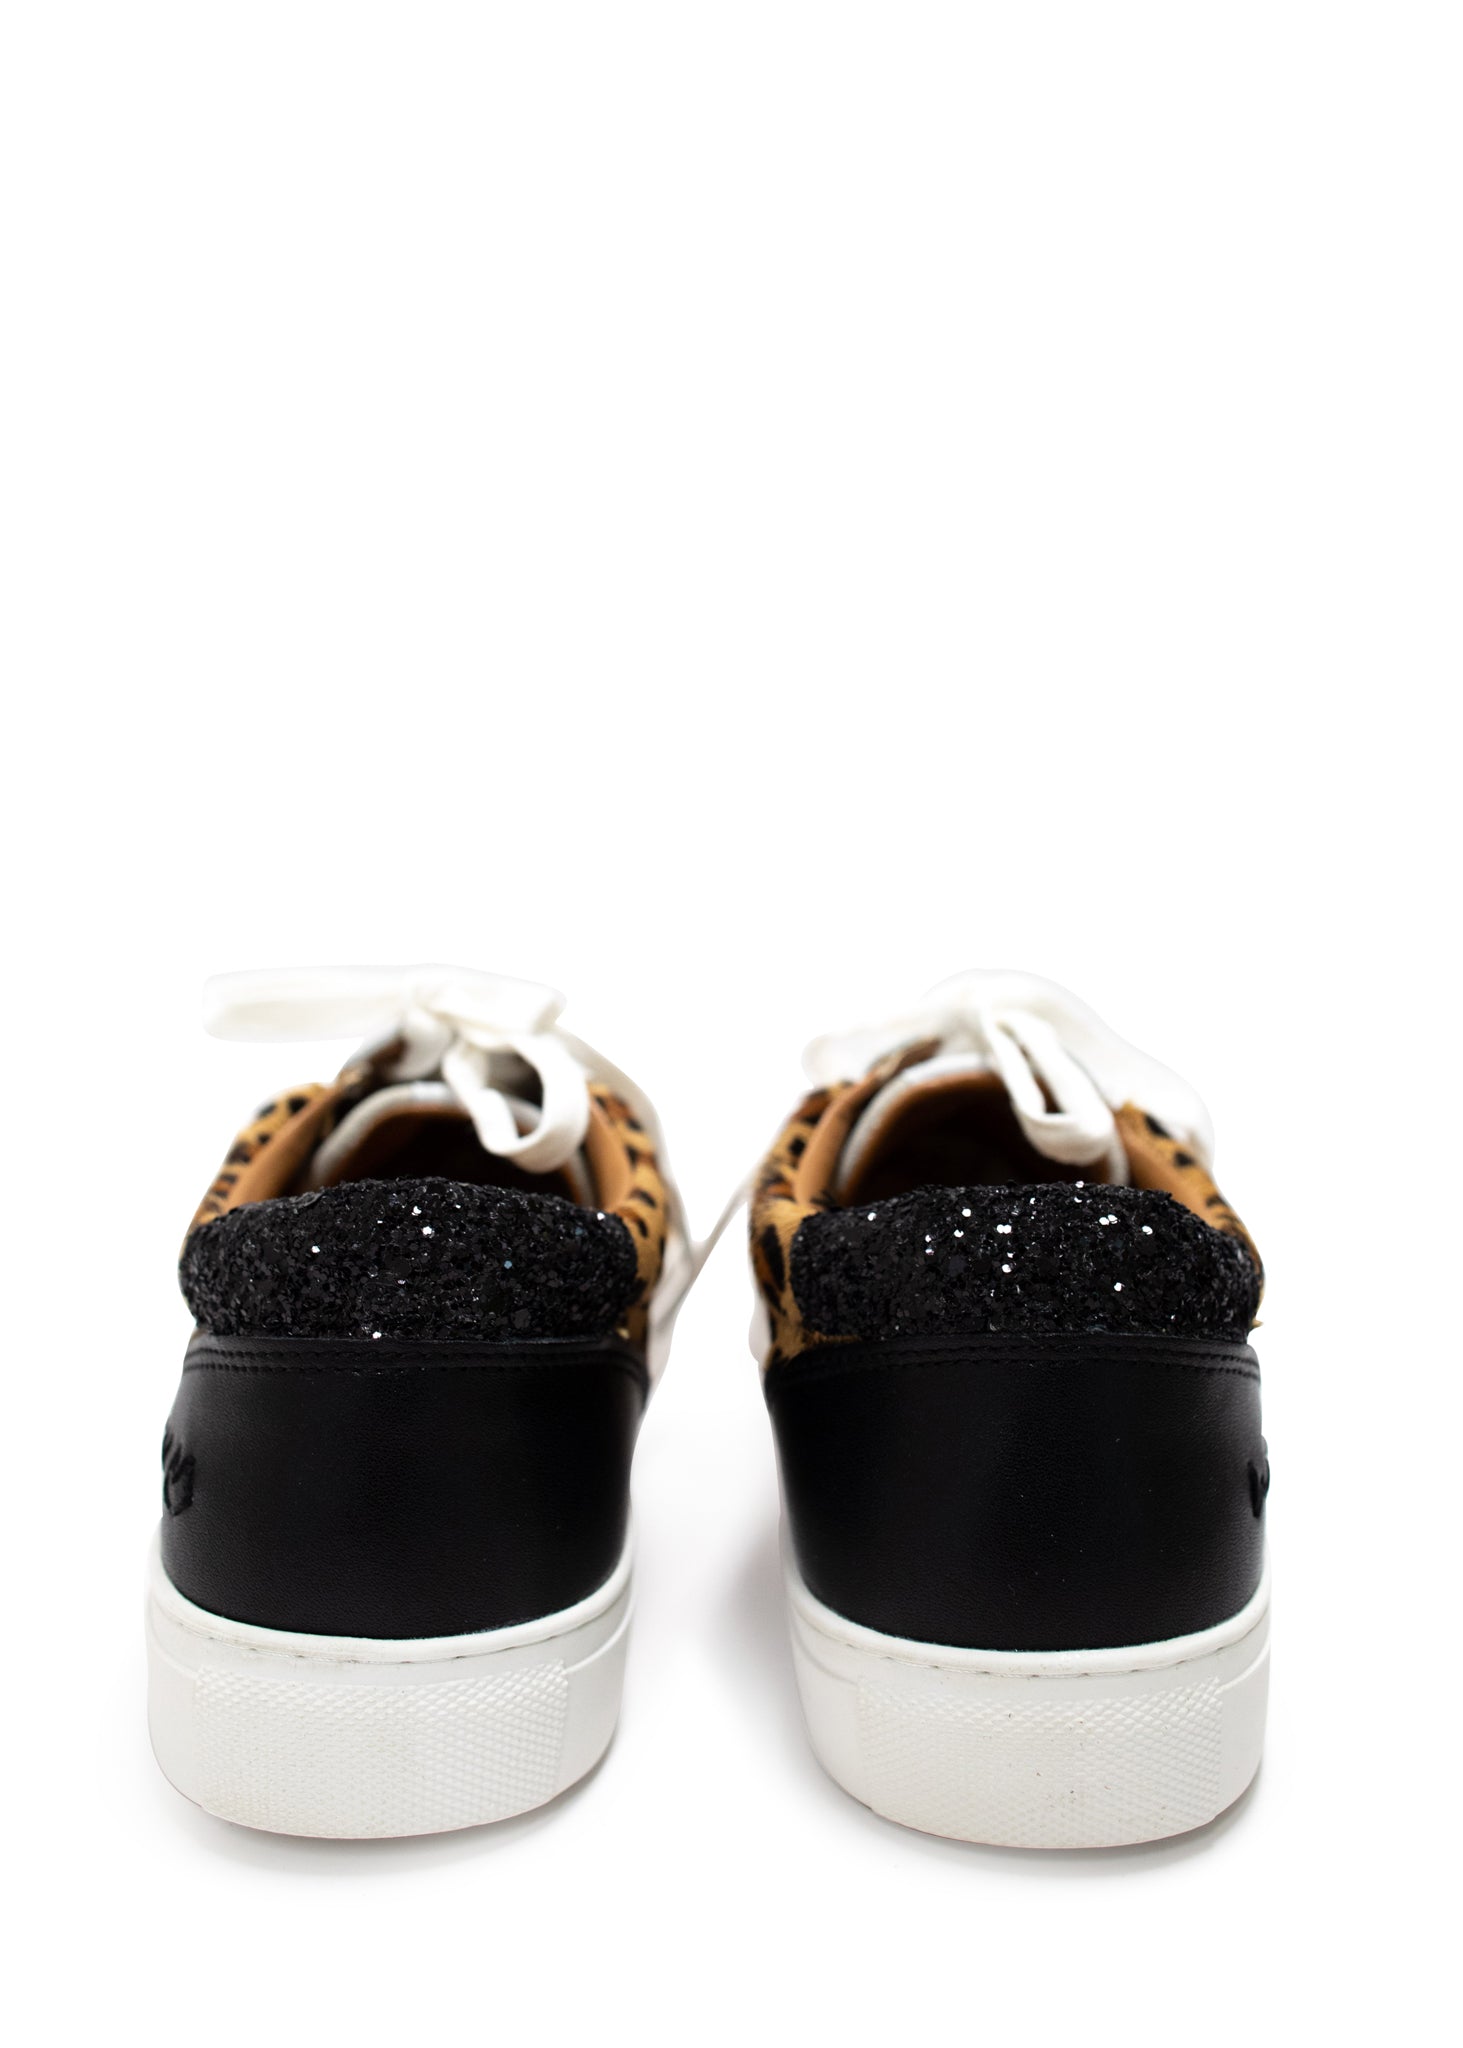 Keystone Cowhide Sneaker in Black and Leopard